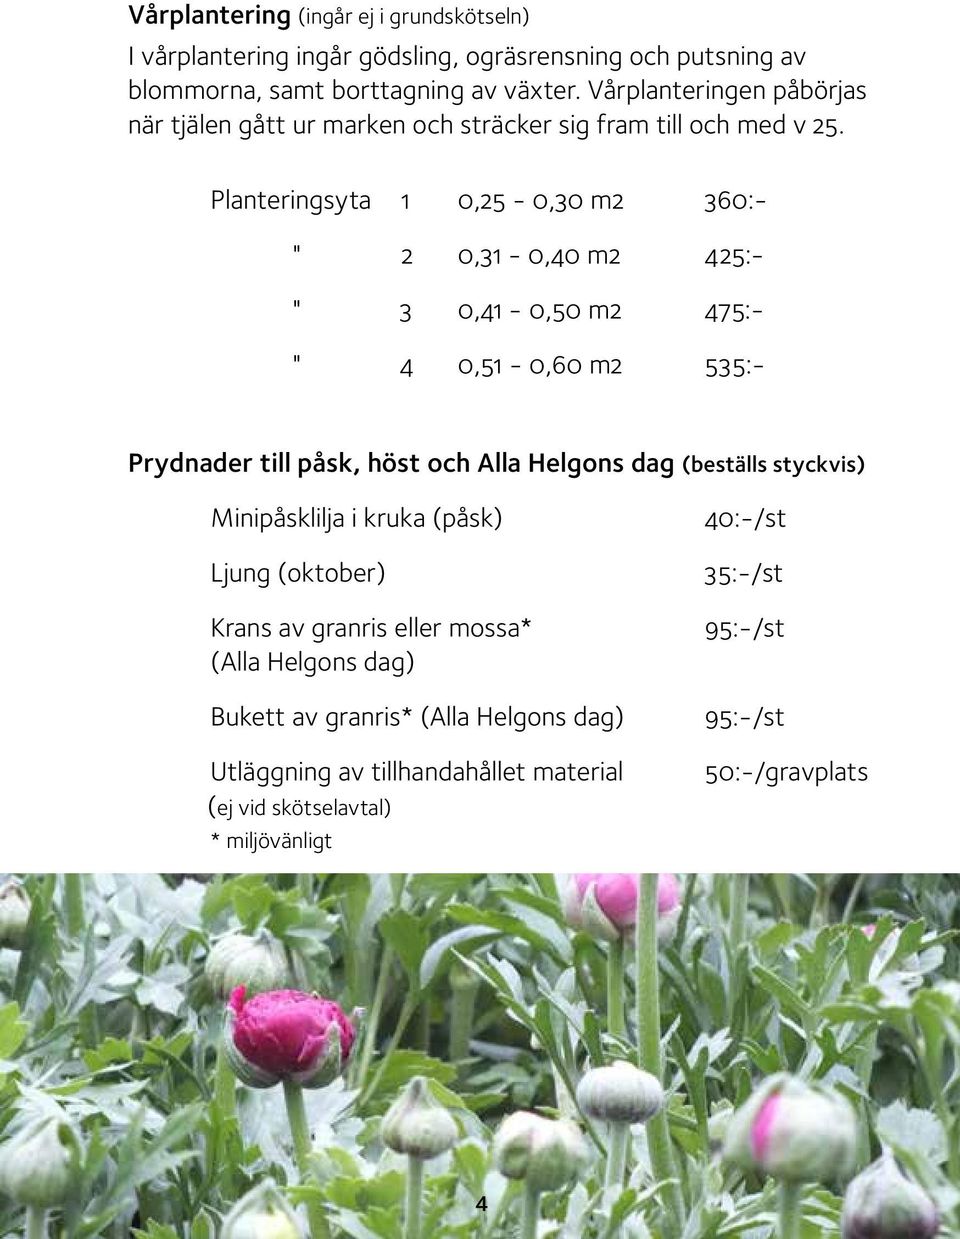 Planteringsyta 1 0,25-0,30 m2 360:- " 2 0,31-0,40 m2 425:- " 3 0,41-0,50 m2 475:- " 4 0,51-0,60 m2 535:- Prydnader till påsk, höst och Alla Helgons dag (beställs